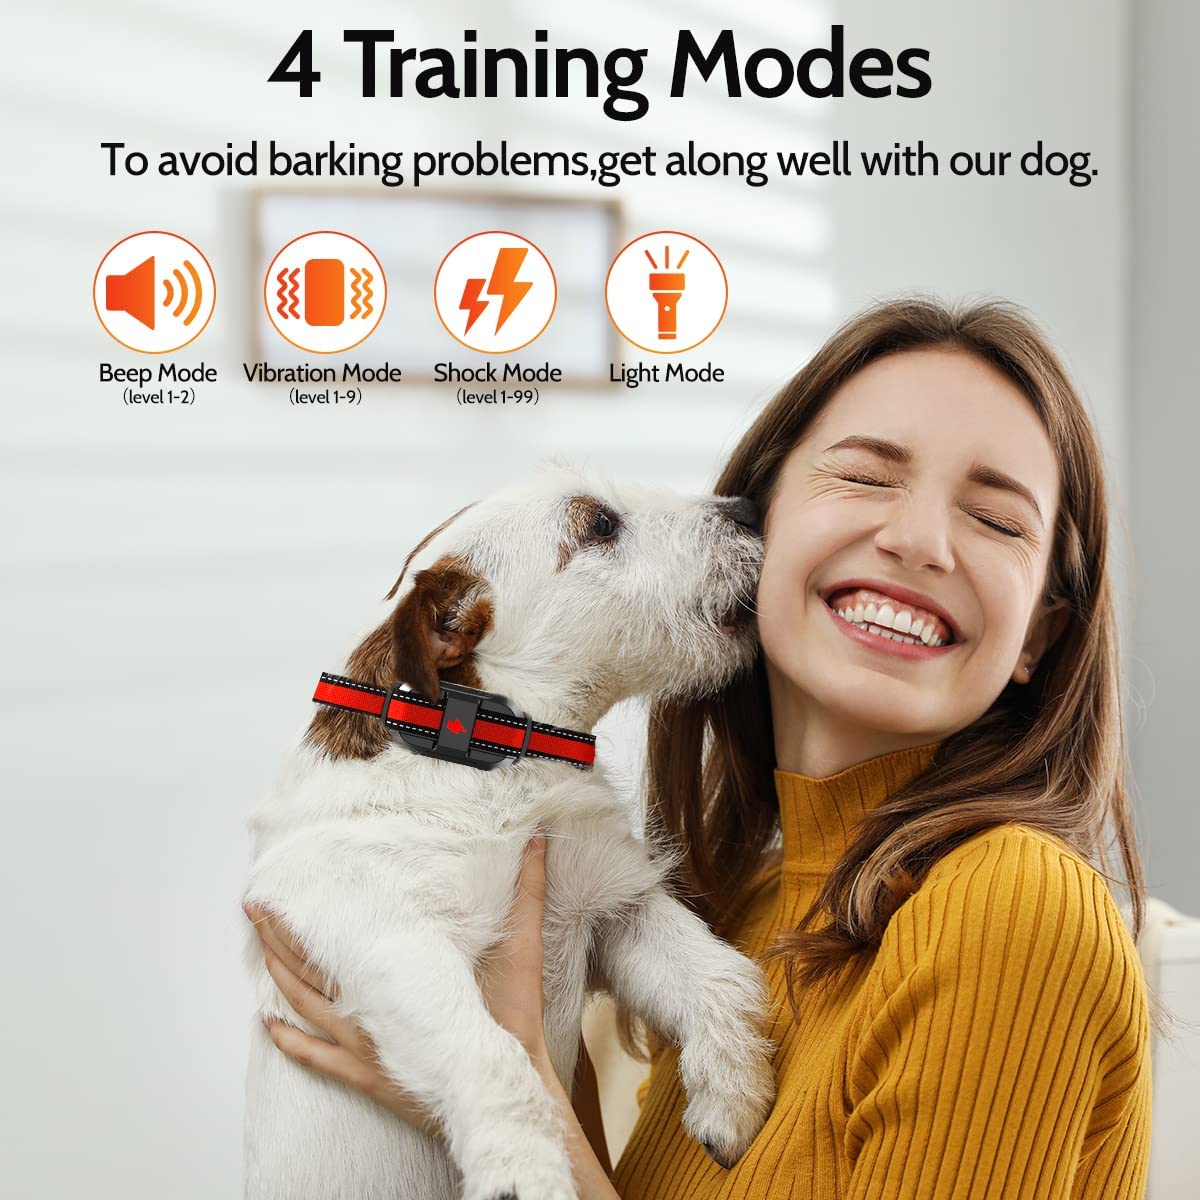  قلاده آموزش سگ با باتری شبانه و بادوام، استفاده از آن برای خانواده شما بسیار آسان است. با شارژ کامل در عرض 2 ساعت، قلاده سگ می تواند تا 45 روز دوام بیاورد.